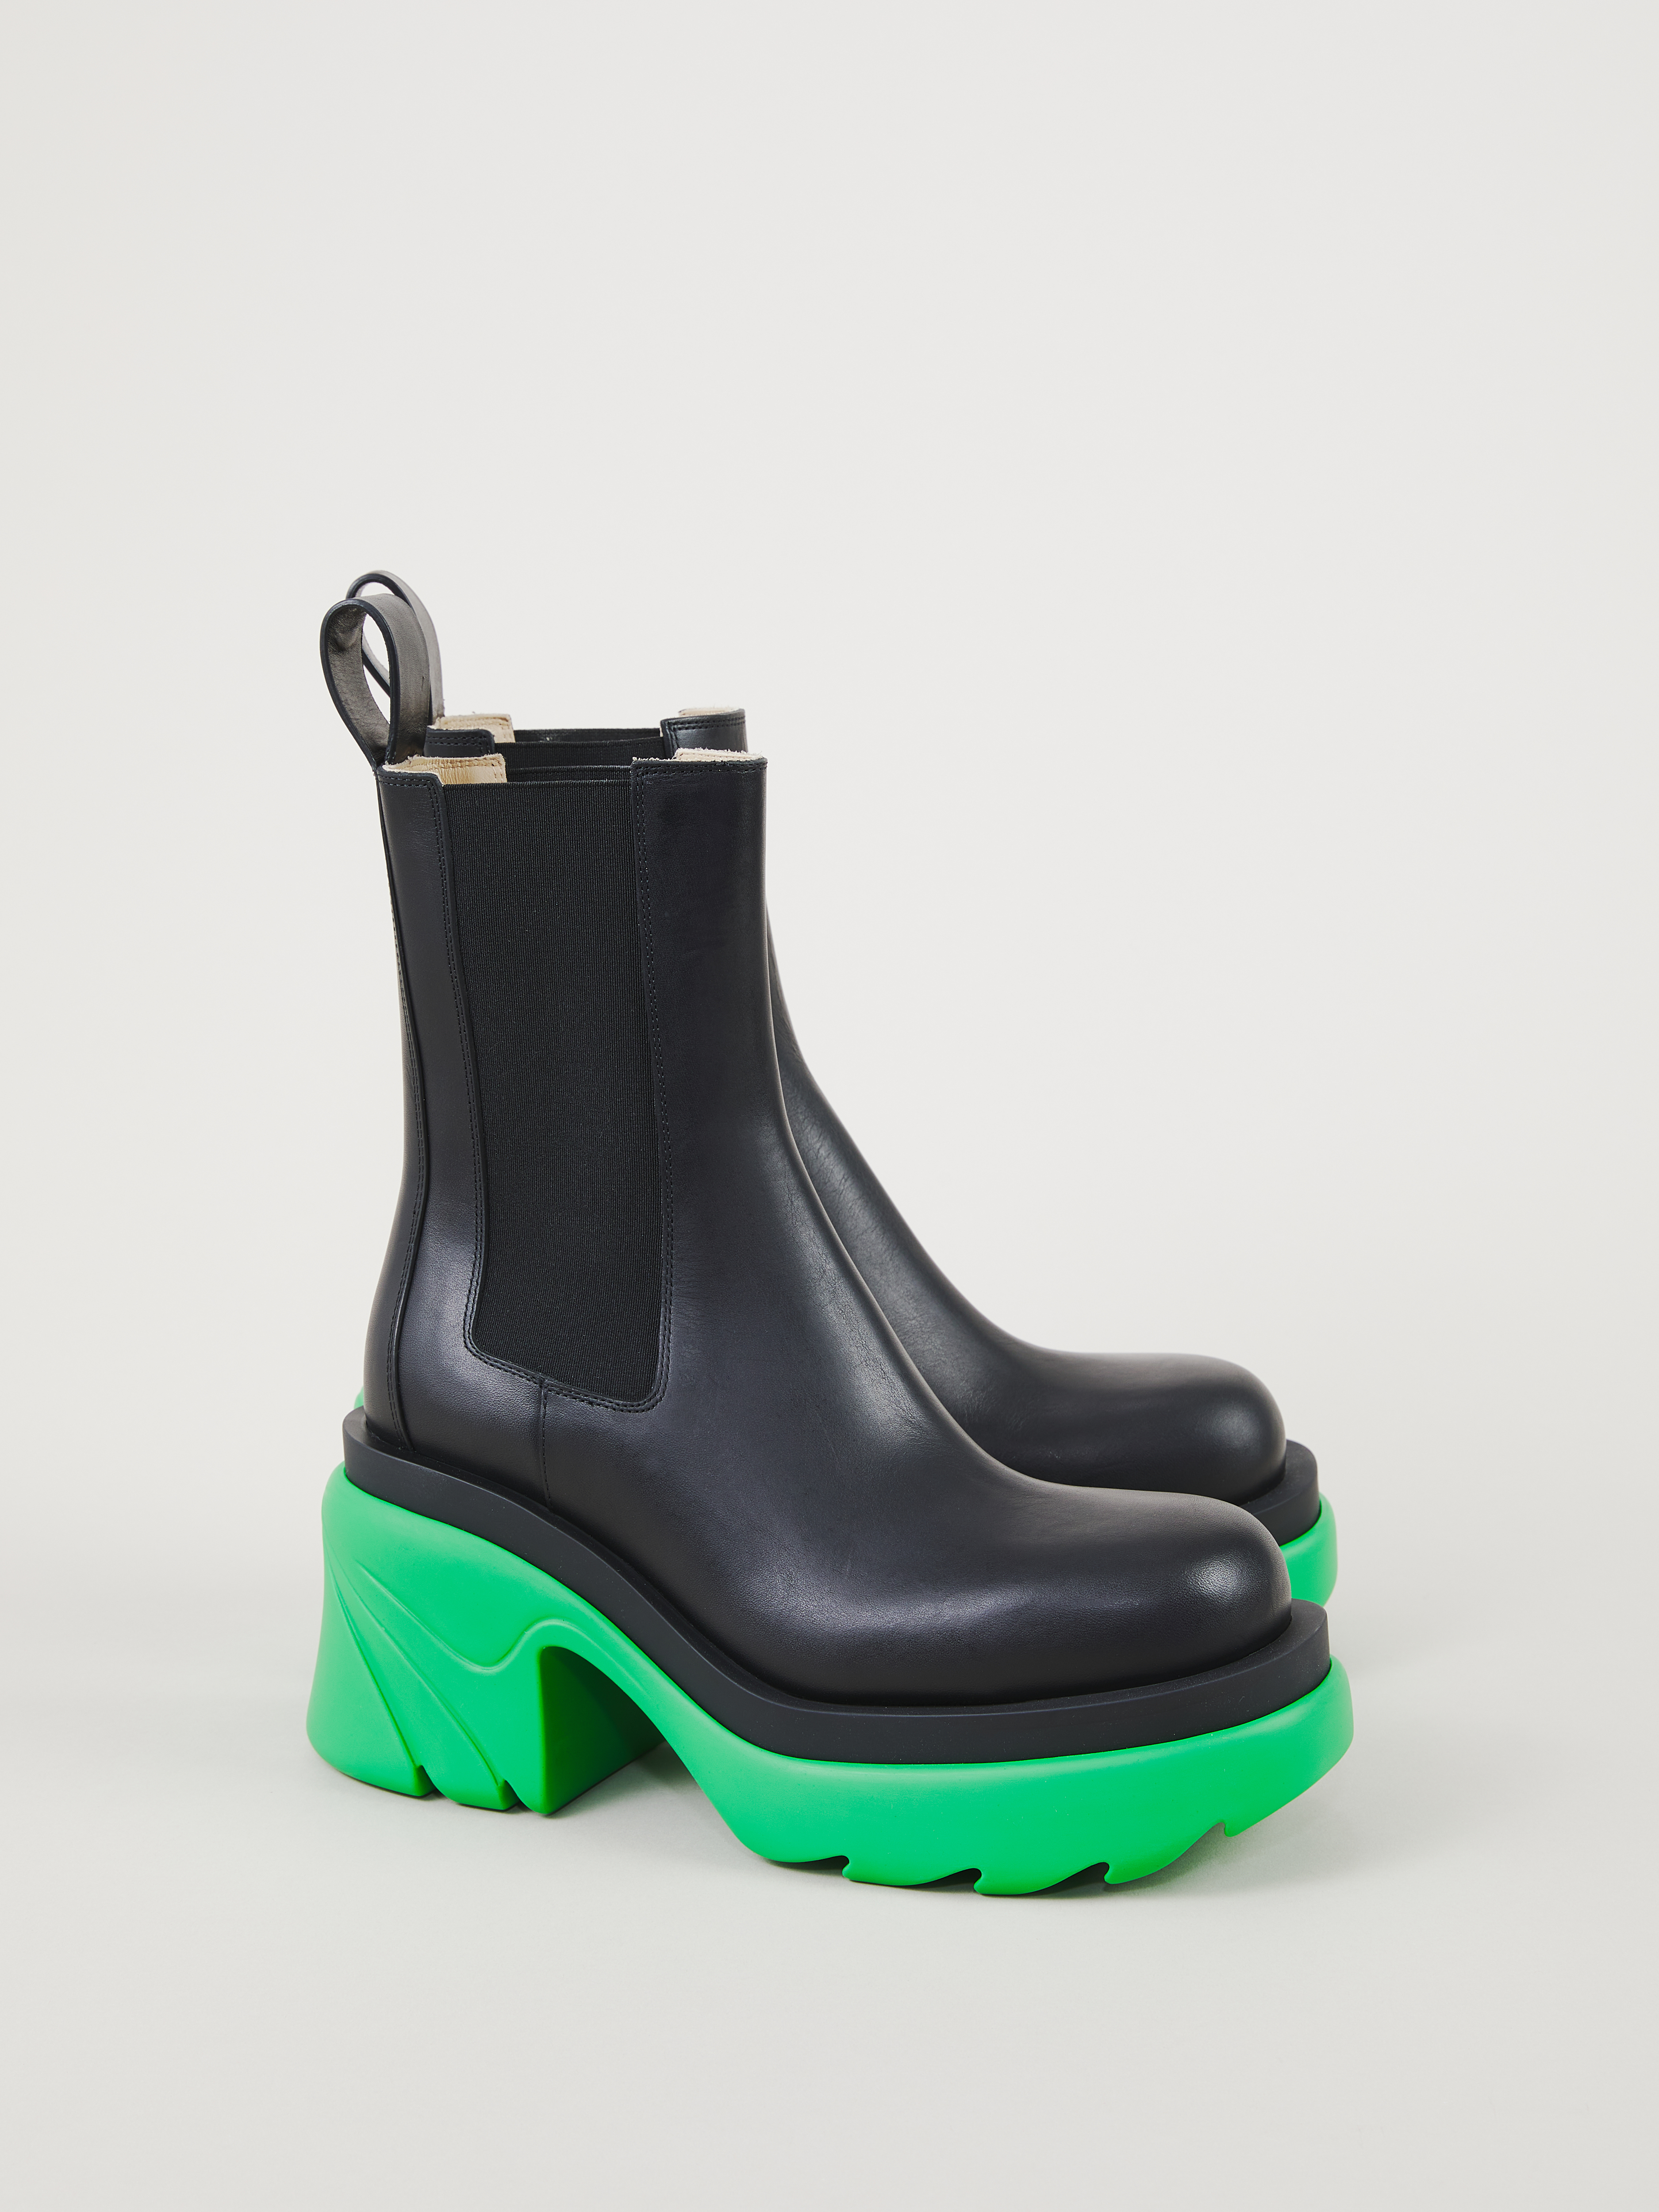 Bottega Veneta Ankle Boots Black/Green | Ankelstøvler